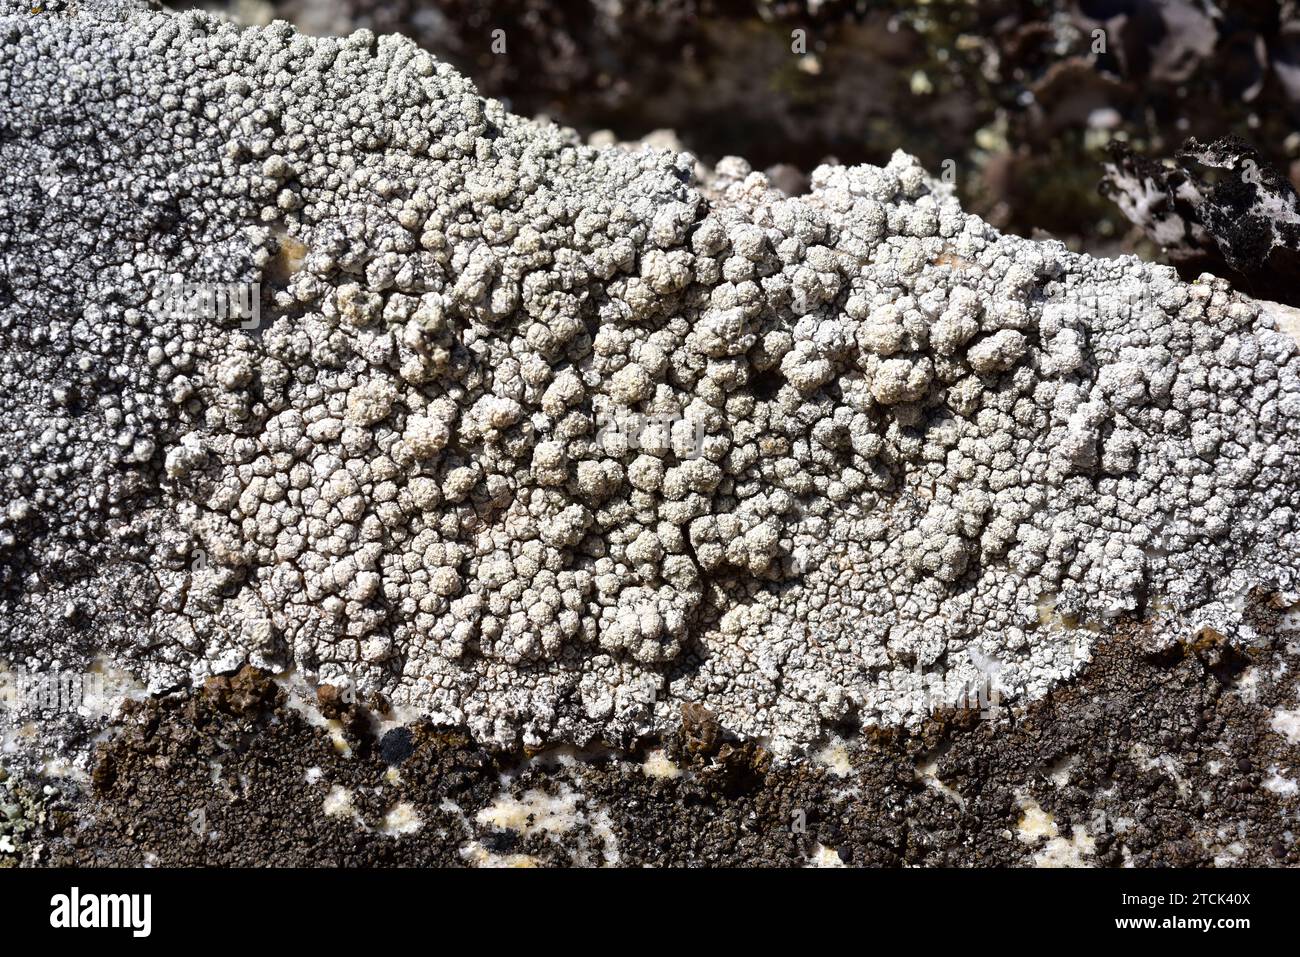 Pertusaria amara is a crustose lichen with soralia. This photo was taken in Arribes del Duero Natural Park, Zamora province, Castilla-Leon, Spain. Stock Photo